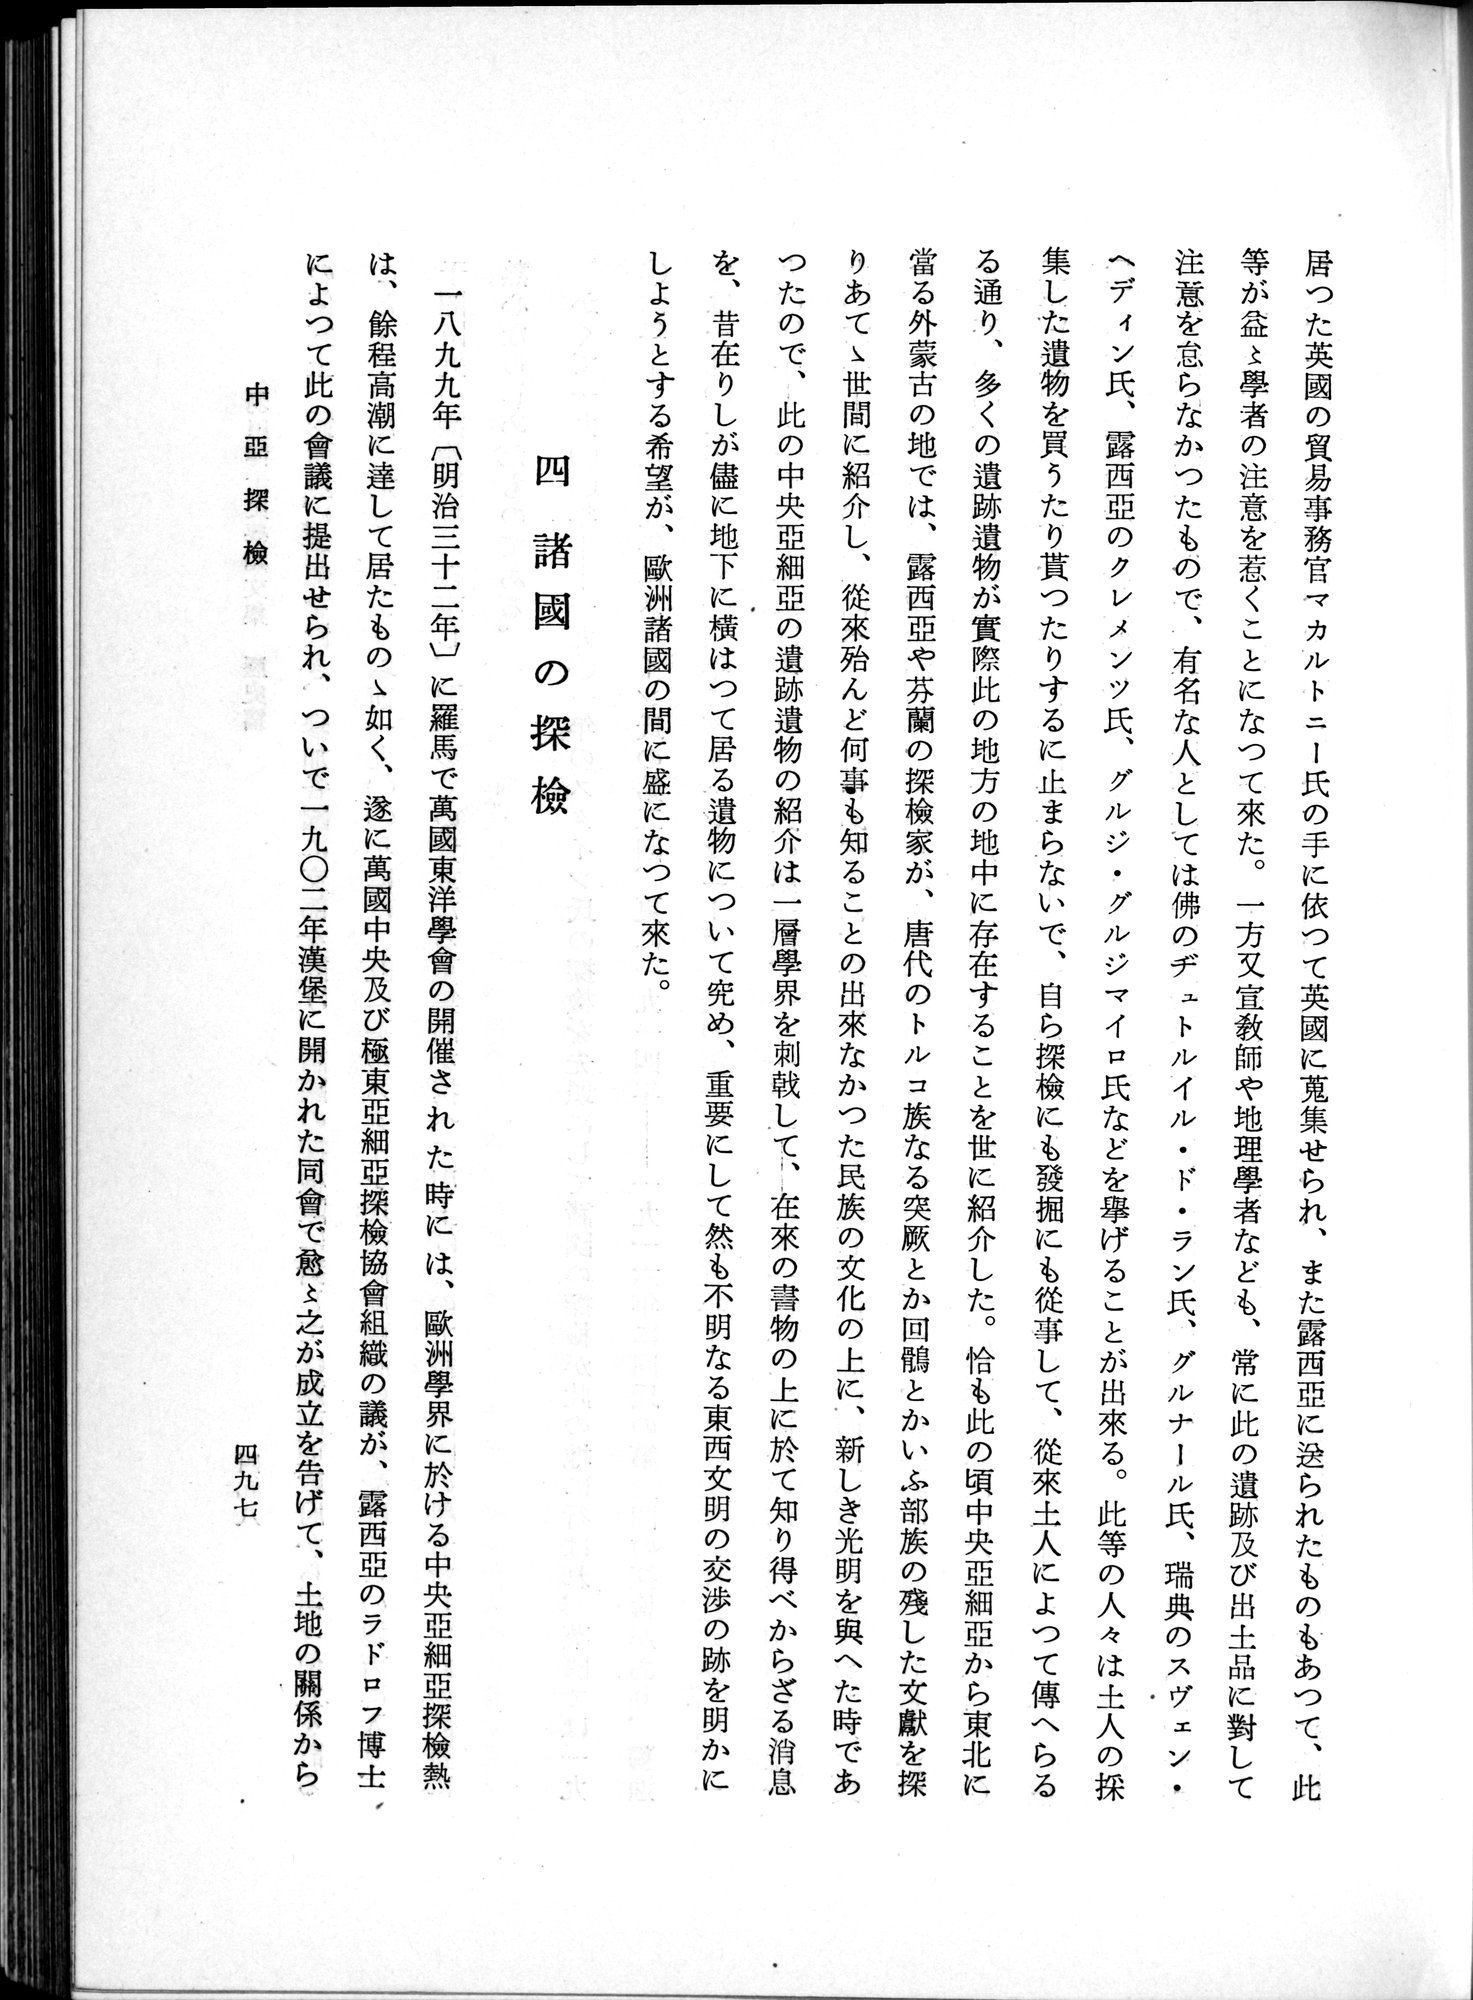 羽田博士史学論文集 : vol.1 / Page 535 (Grayscale High Resolution Image)